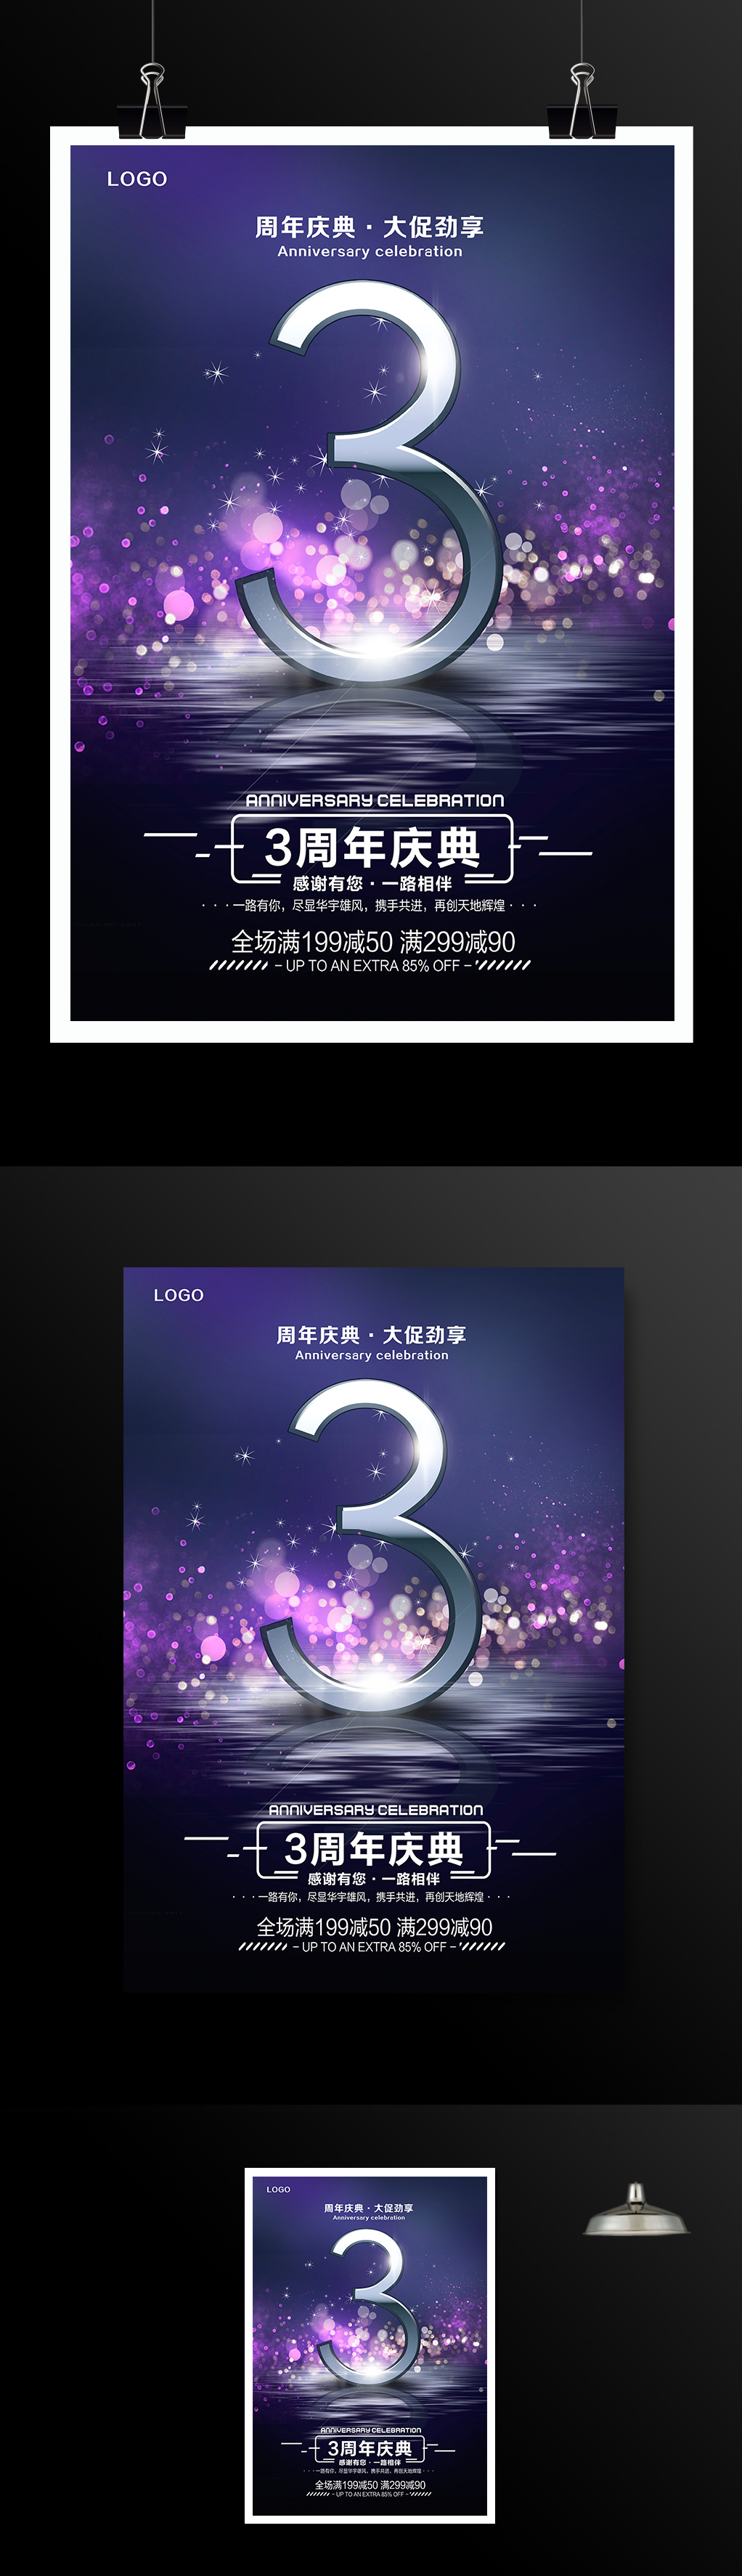 紫色时尚3周年庆典周年庆海报设计